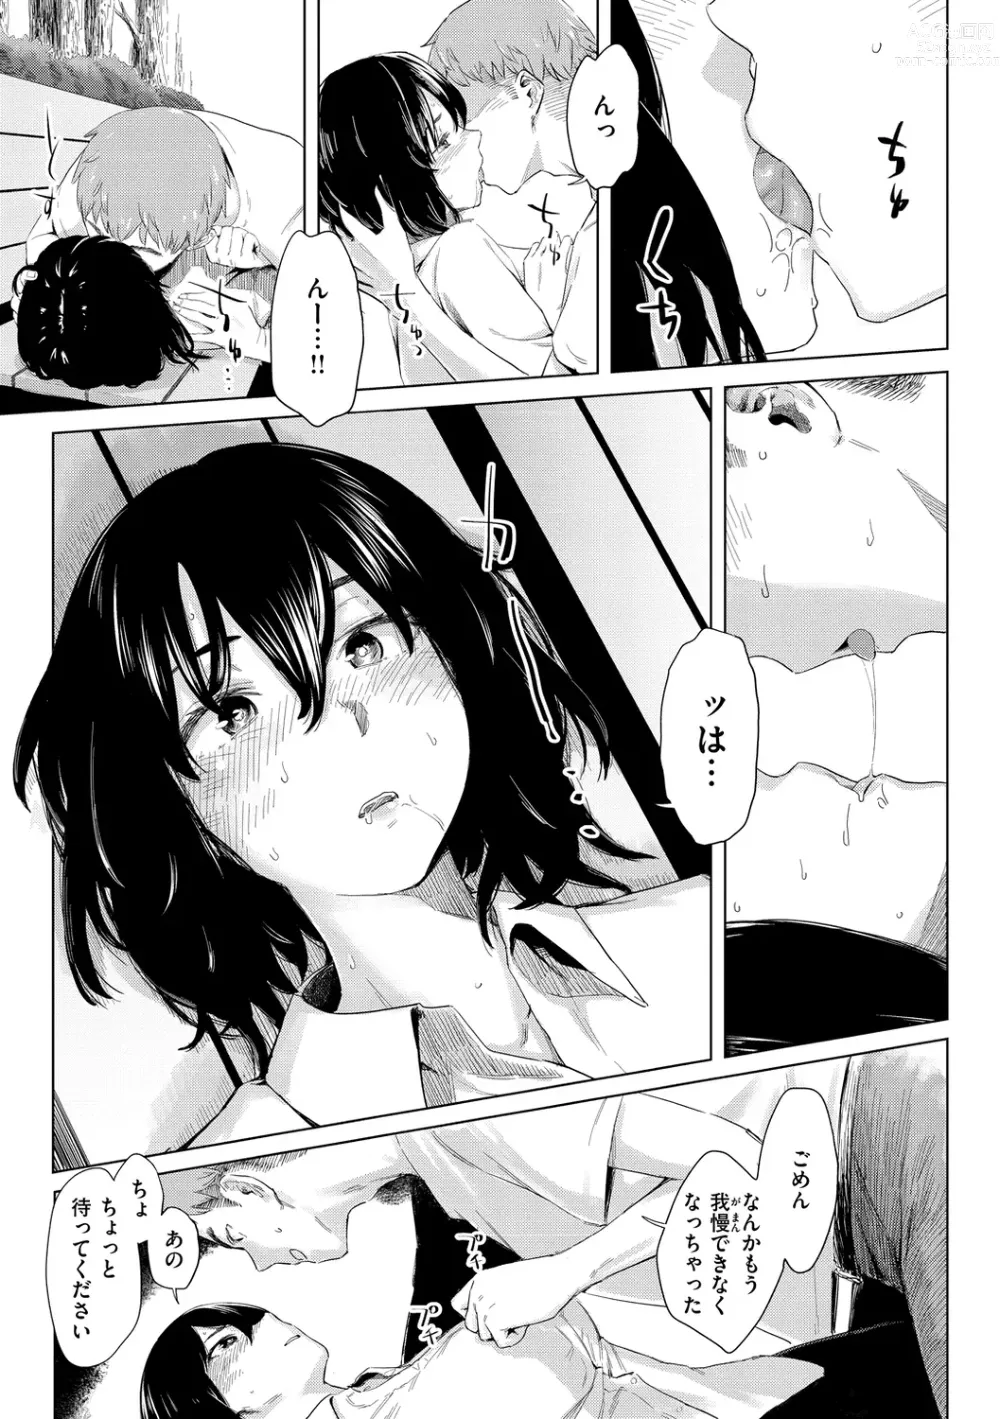 Page 149 of manga Yabai Onna